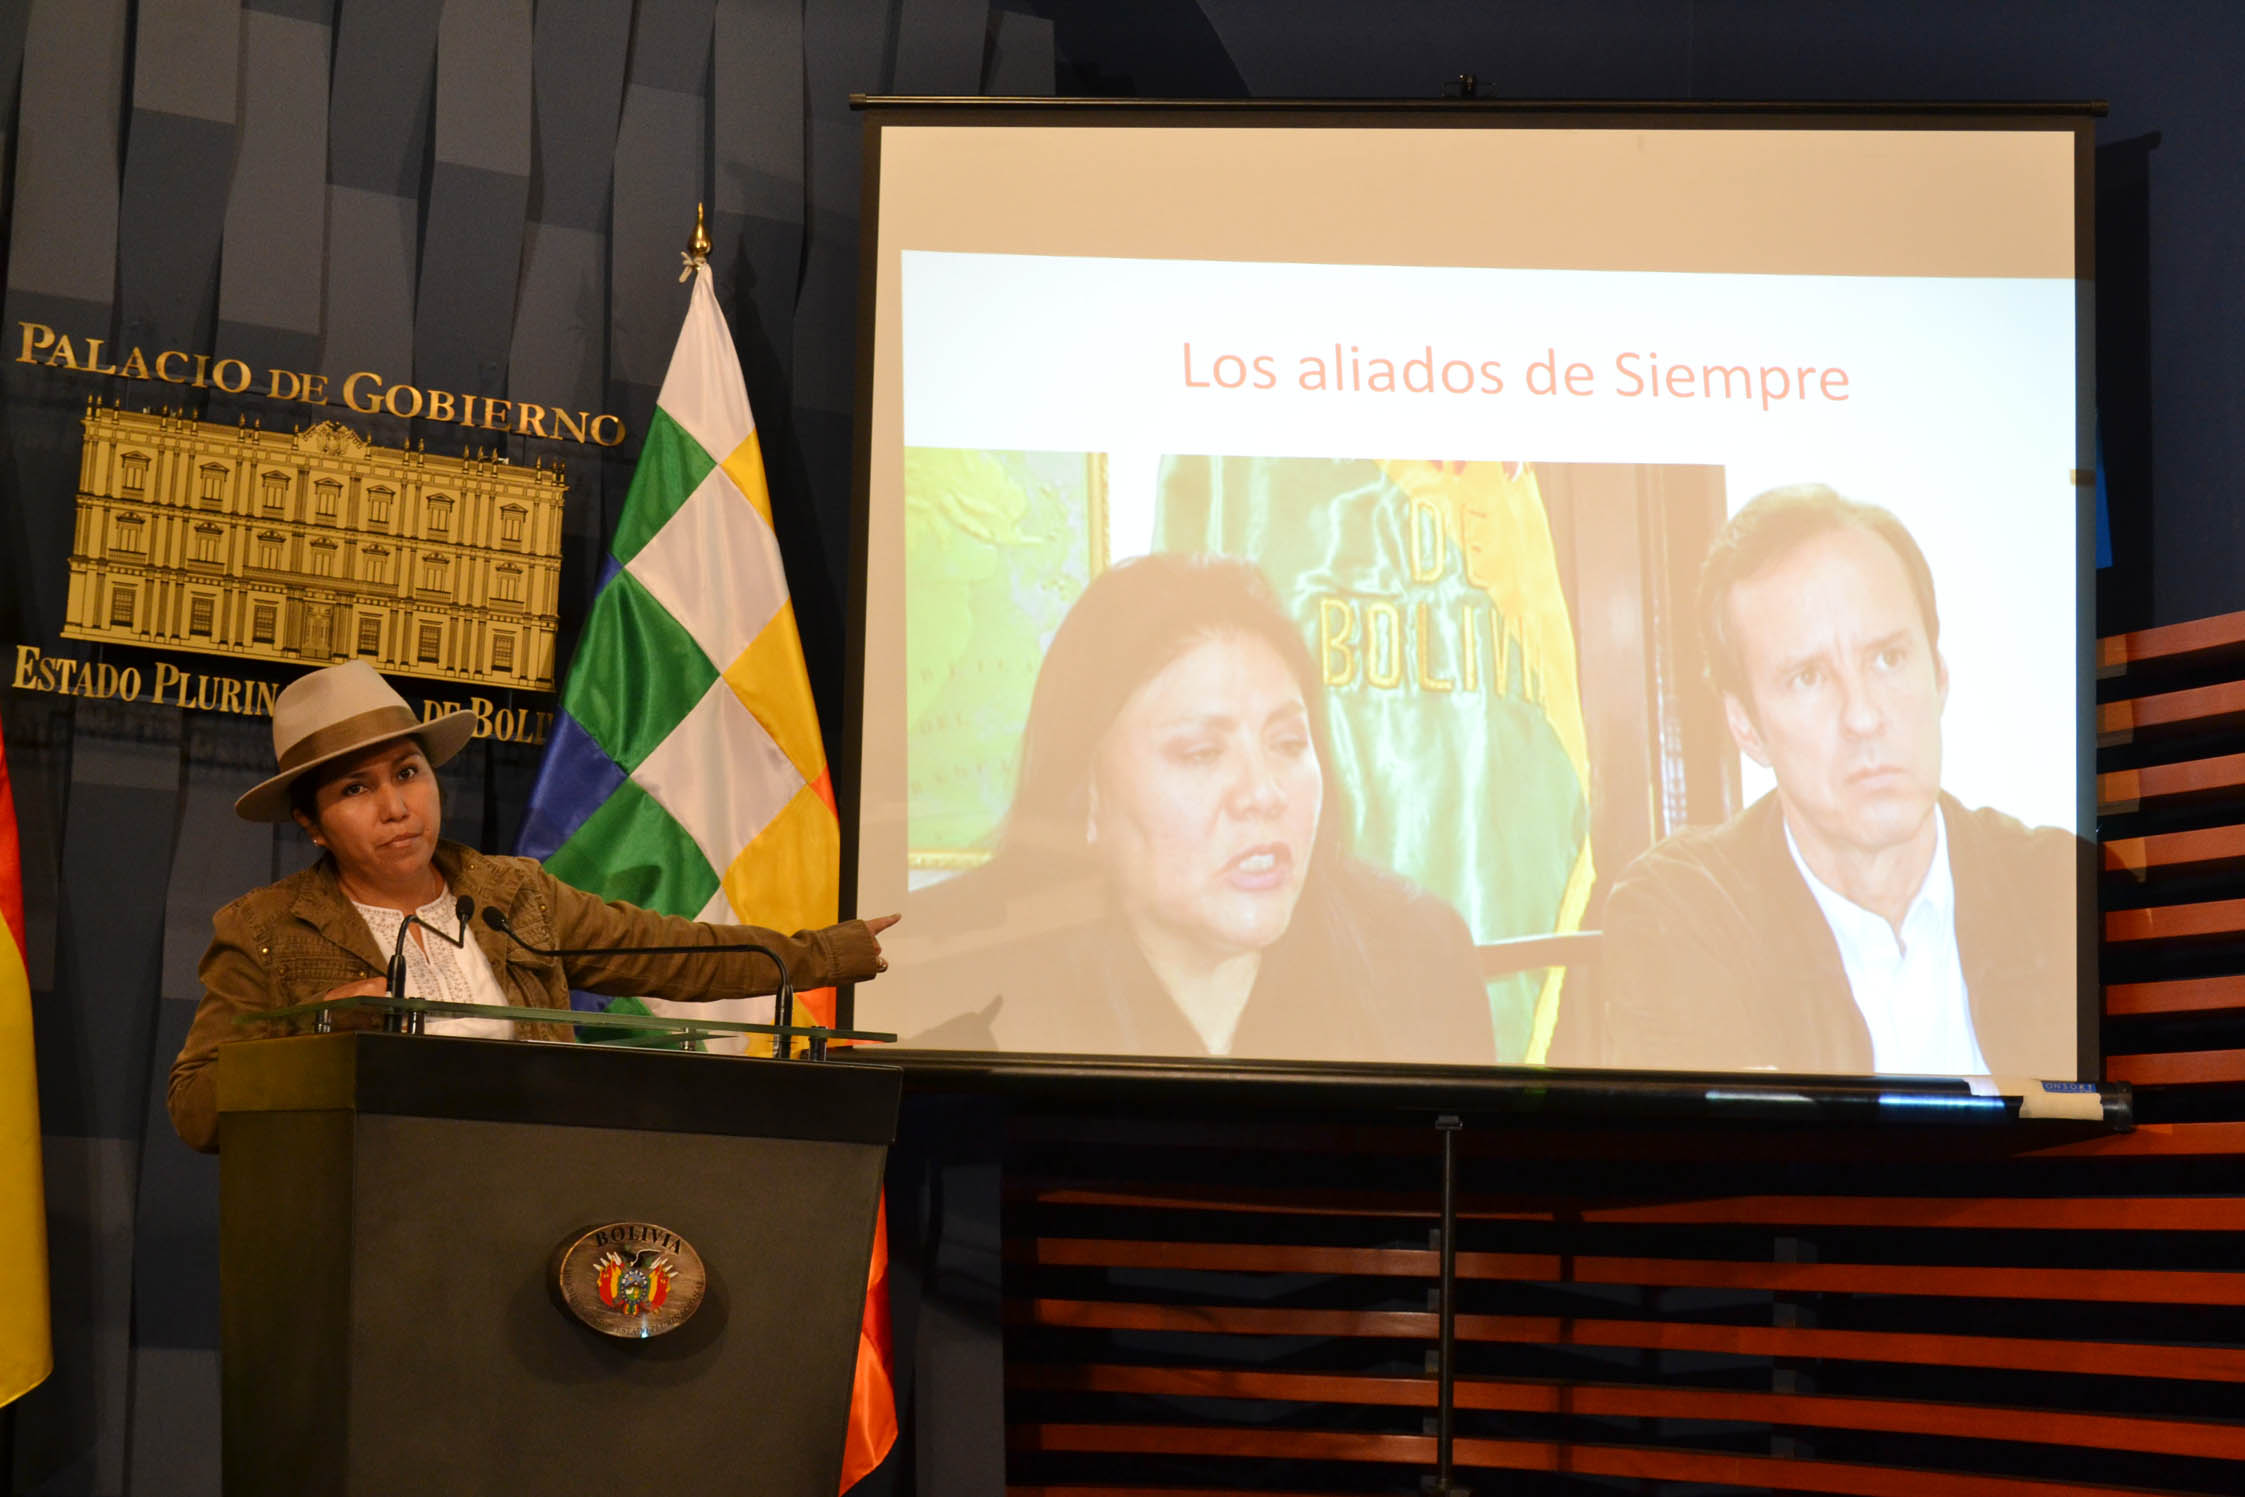 La ministra de Comunicación alega que tienen pruebas de financiamiento contra la democracia boliviana